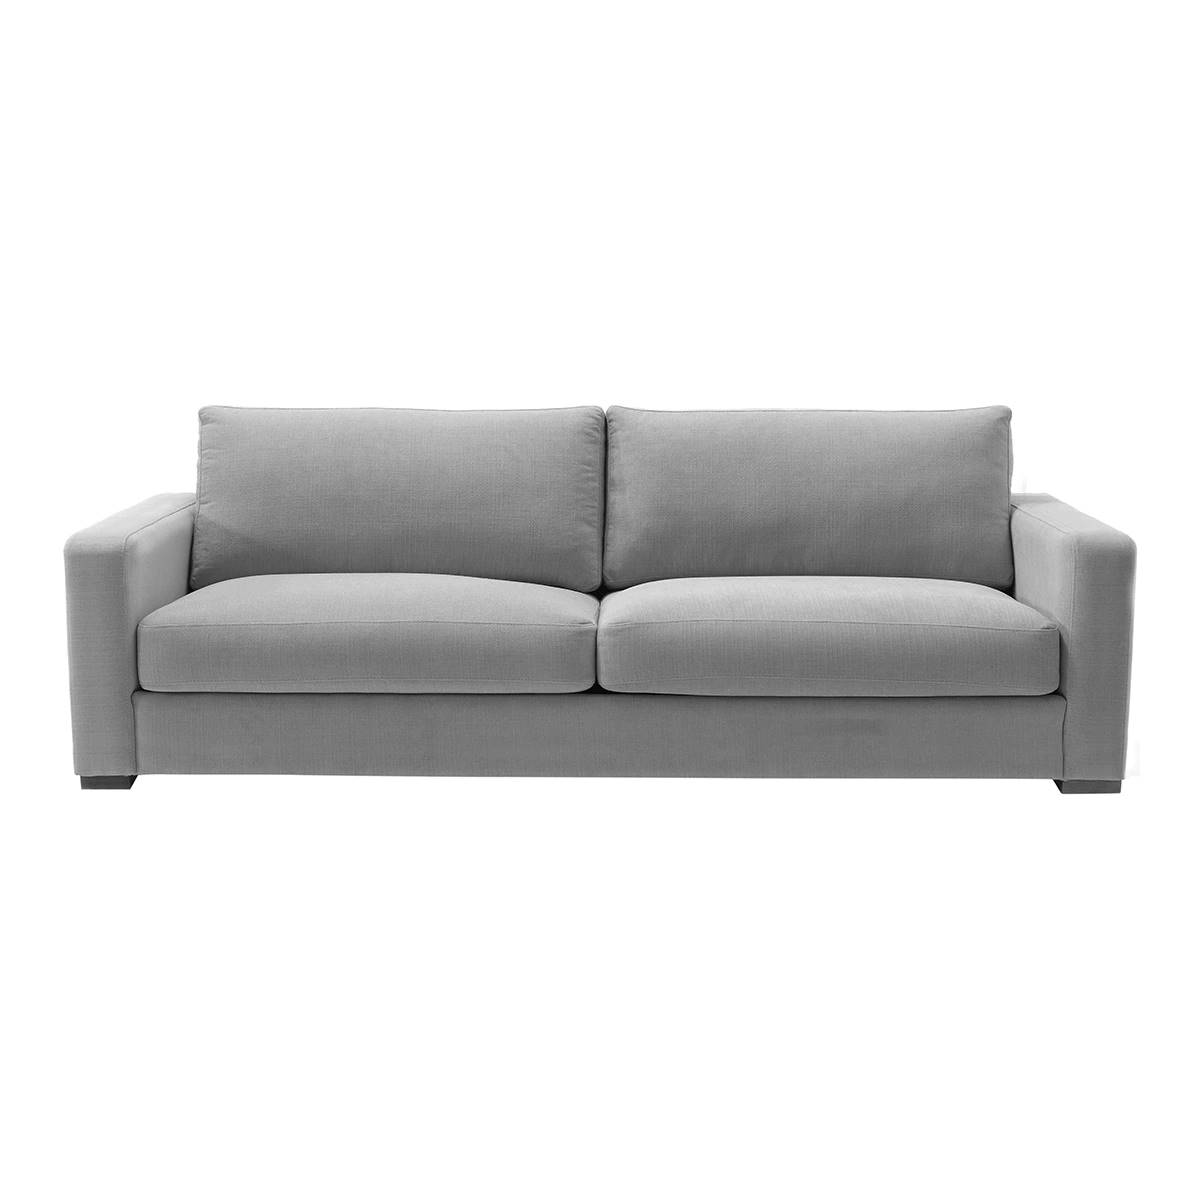 Sofá tapizado de 3 plazas modelo Mold en color gris de El Corte Inglés